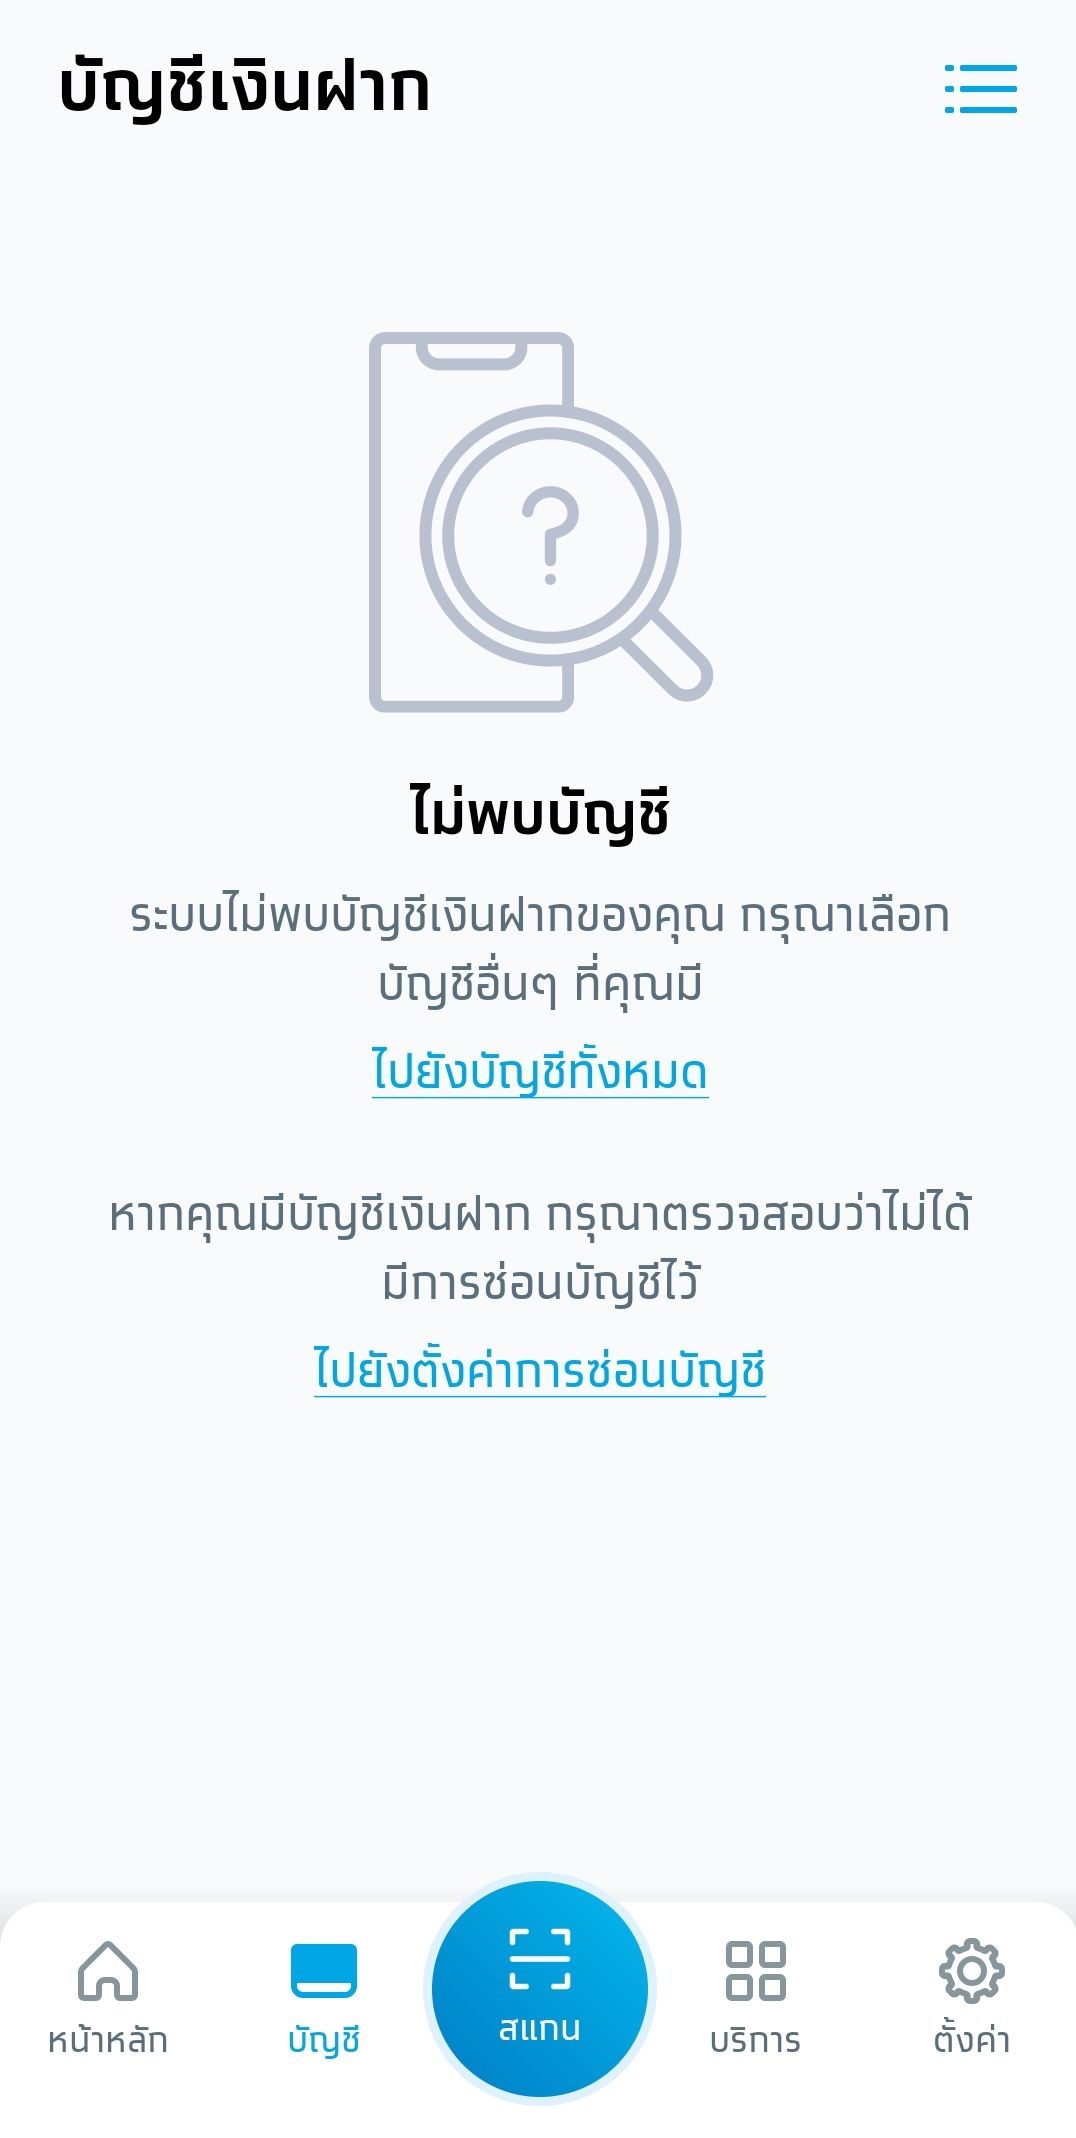 เปิดบัญชีกรุงไทยออนไลน์ แล้ว ดูเลขบัญชีกรุงไทยไม่ได้ กดดูแล้วเป็น  123-4-56789-0 - Pantip